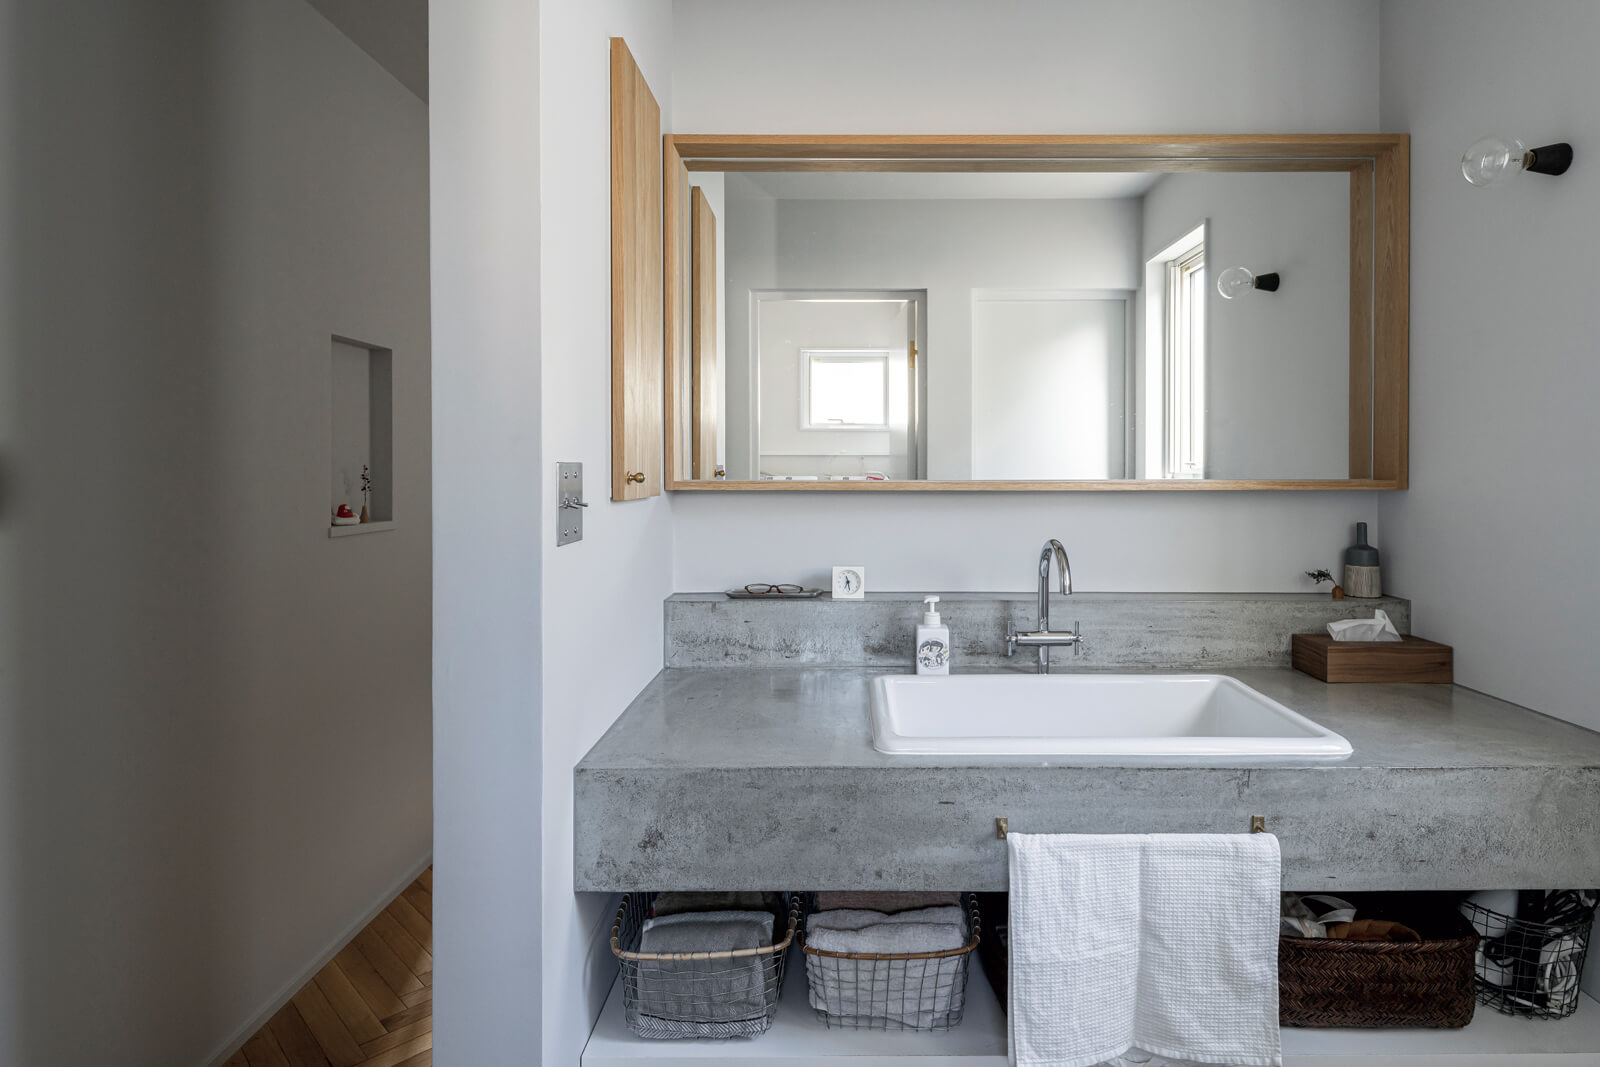 モルタル仕上げの造作洗面台は、帰宅後すぐに手洗いがしやすいよう、玄関から直行できる位置に配置されている